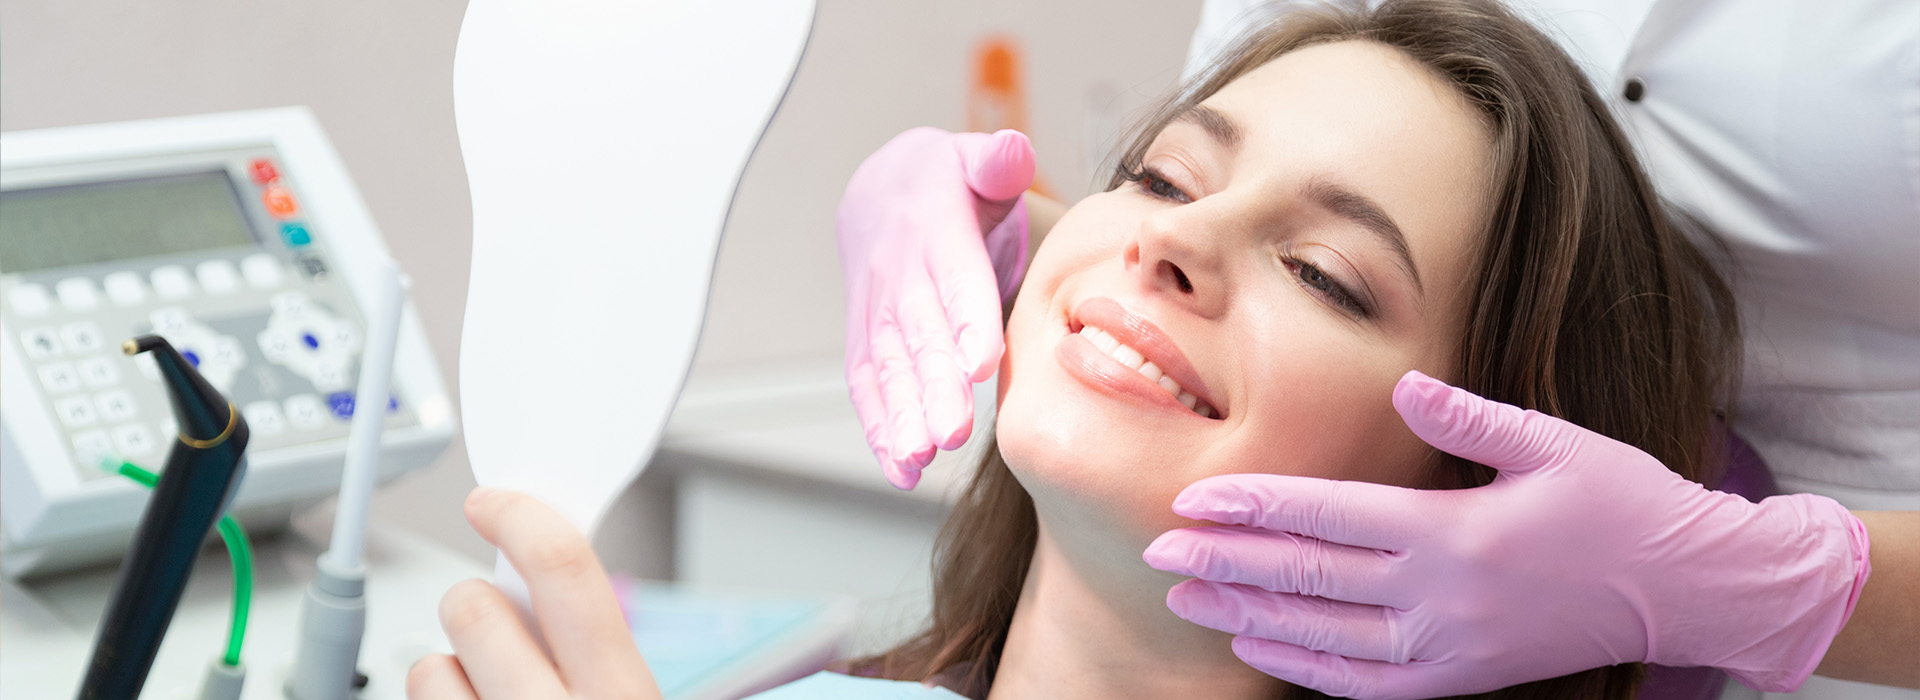 Napa Dental | Dental Bonding, Oral Exams and Veneers